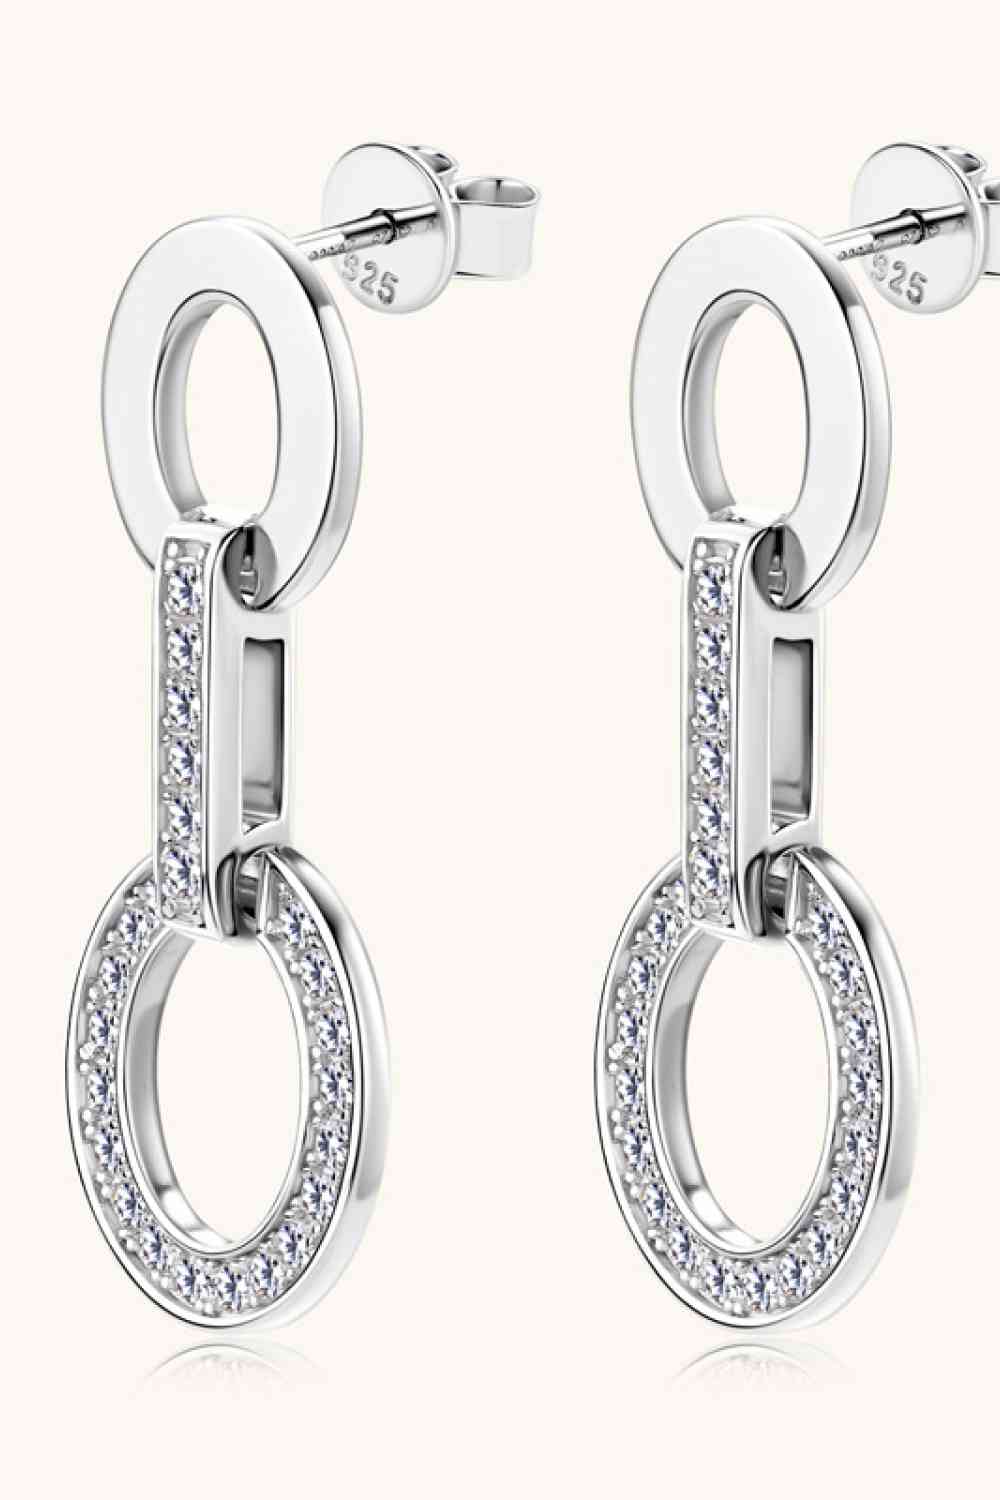 Chain Link Moissanite 925 Sterling Silver Earrings